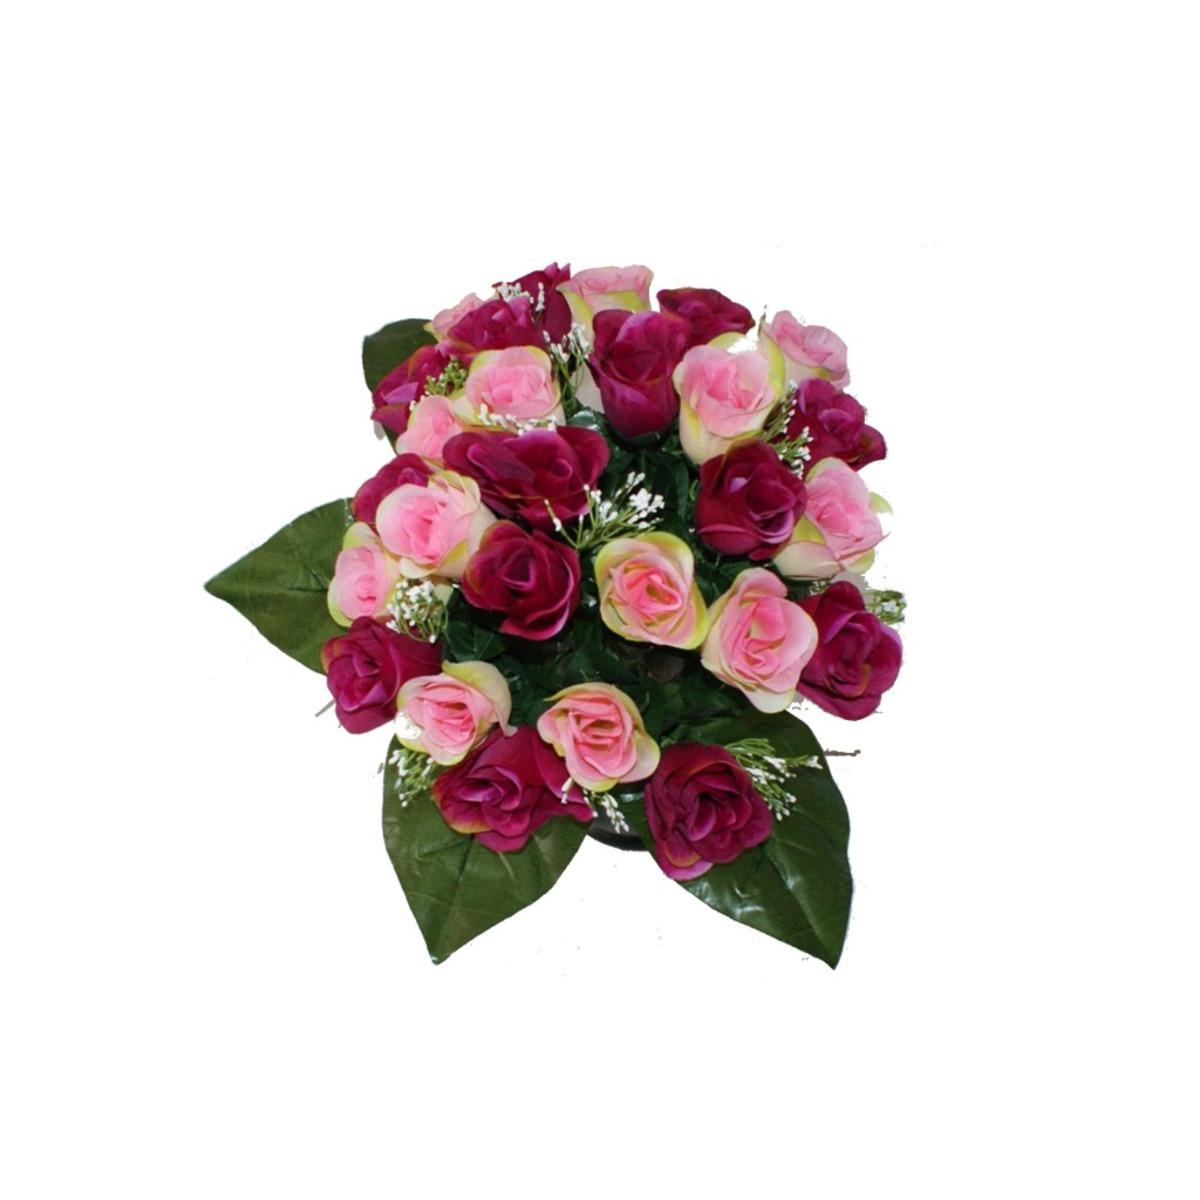 Piquet 27 roses luxe - Hauteur 40 cm - Rose fushia